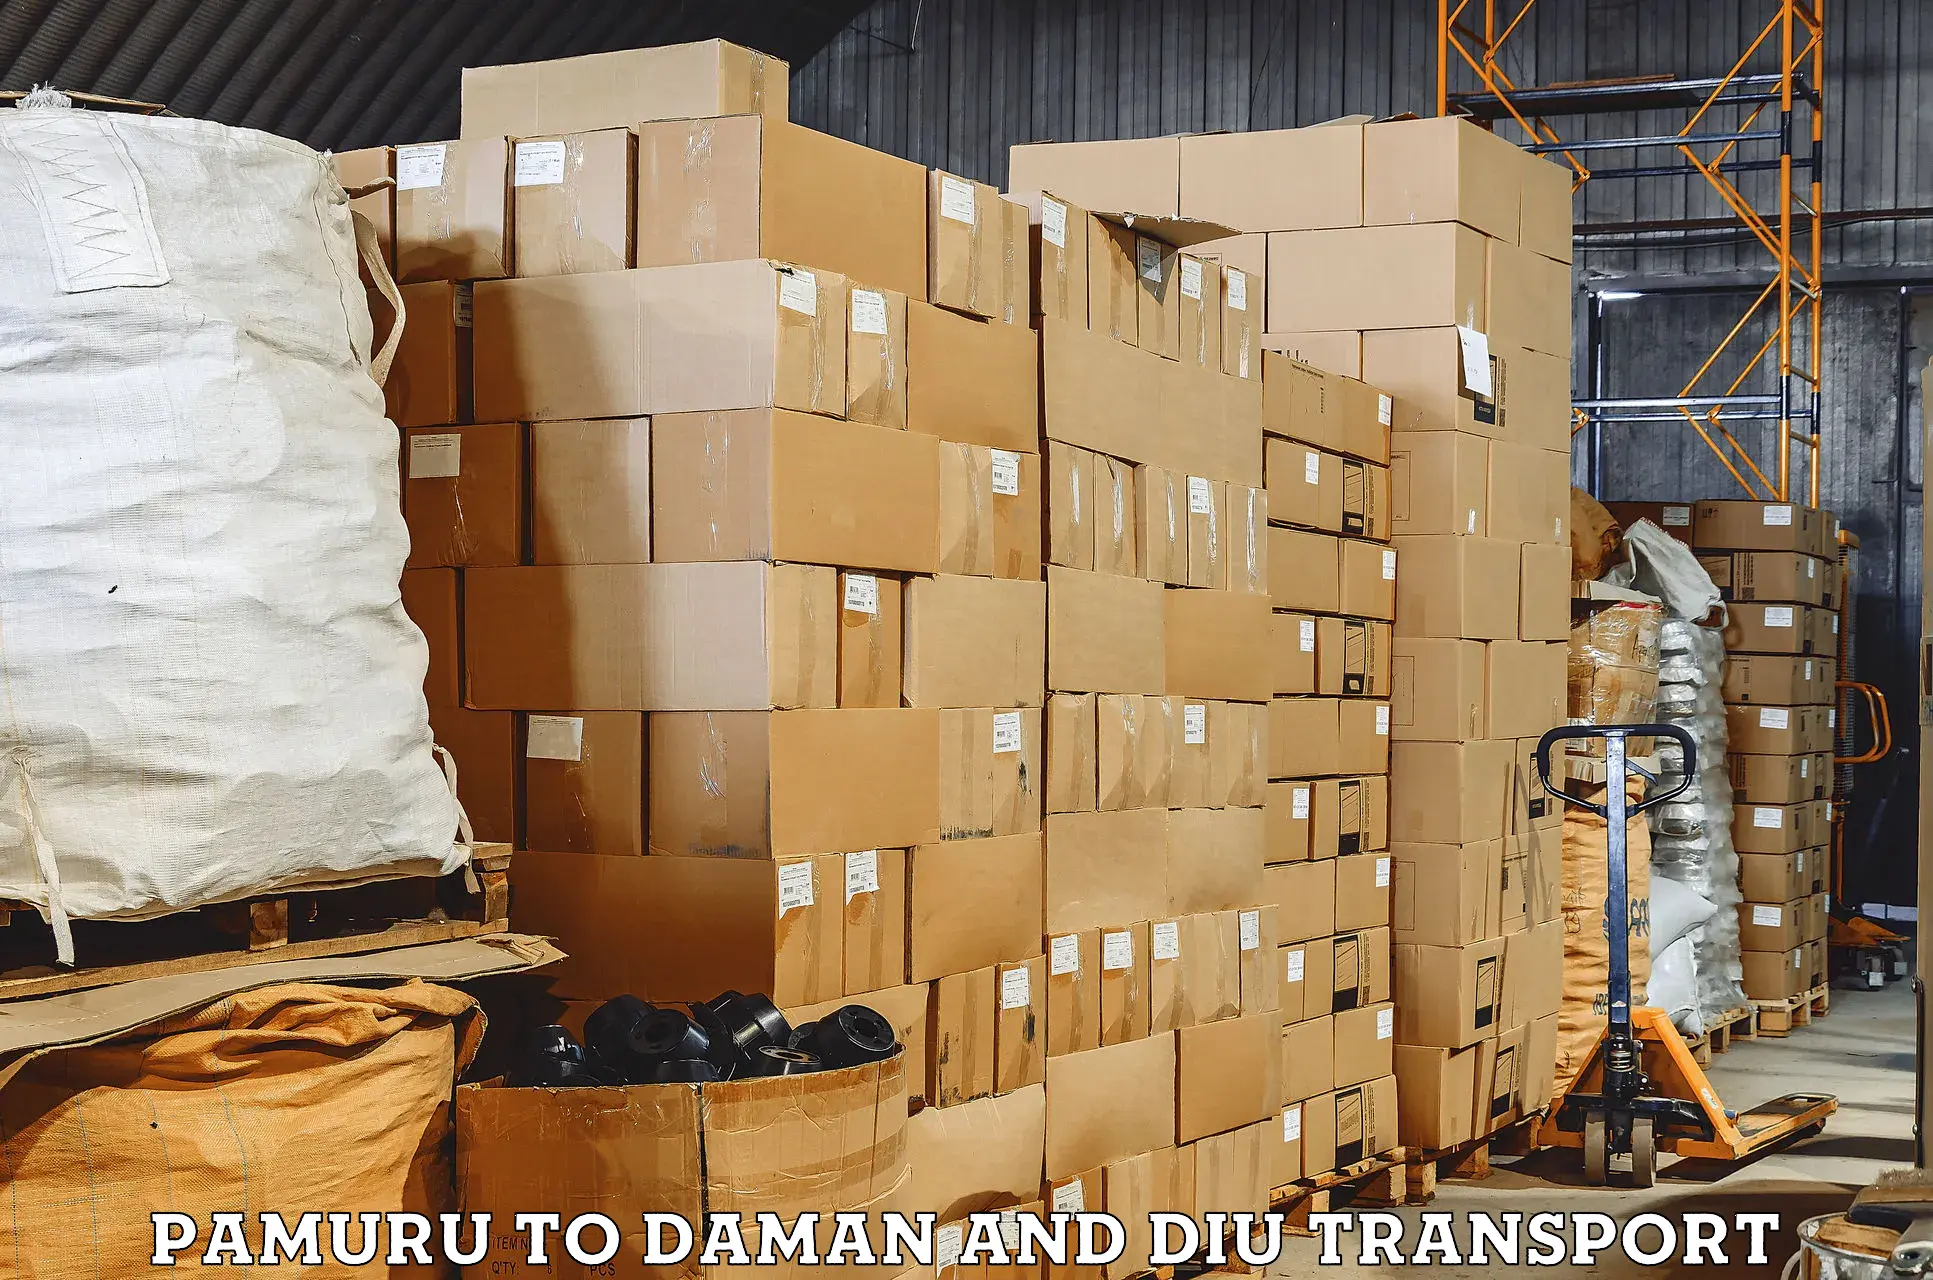 Air cargo transport services Pamuru to Daman and Diu